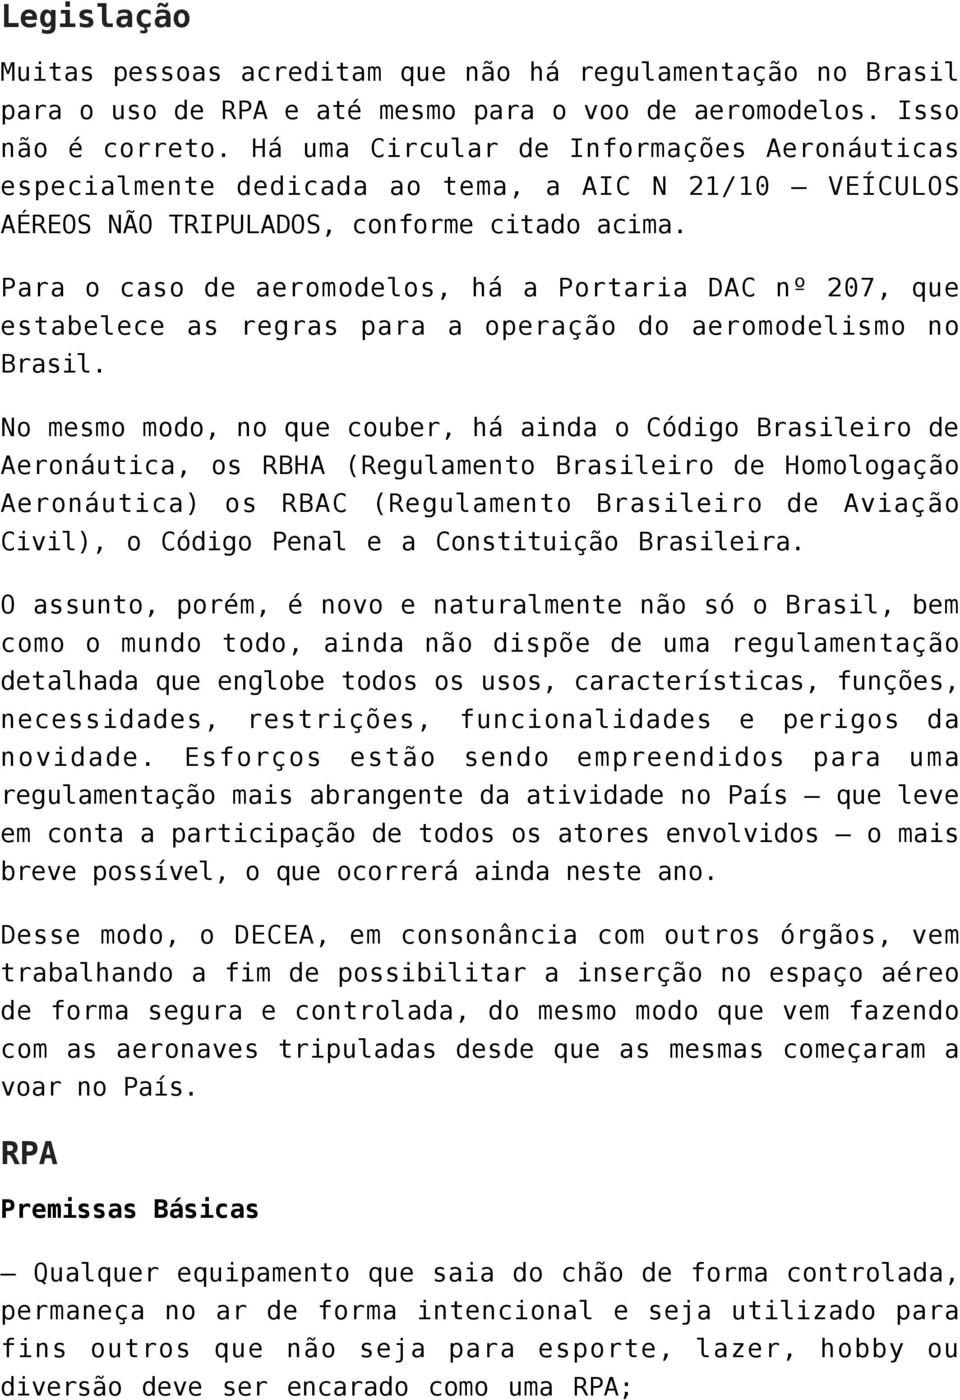 Para o caso de aeromodelos, há a Portaria DAC nº 207, que estabelece as regras para a operação do aeromodelismo no Brasil.